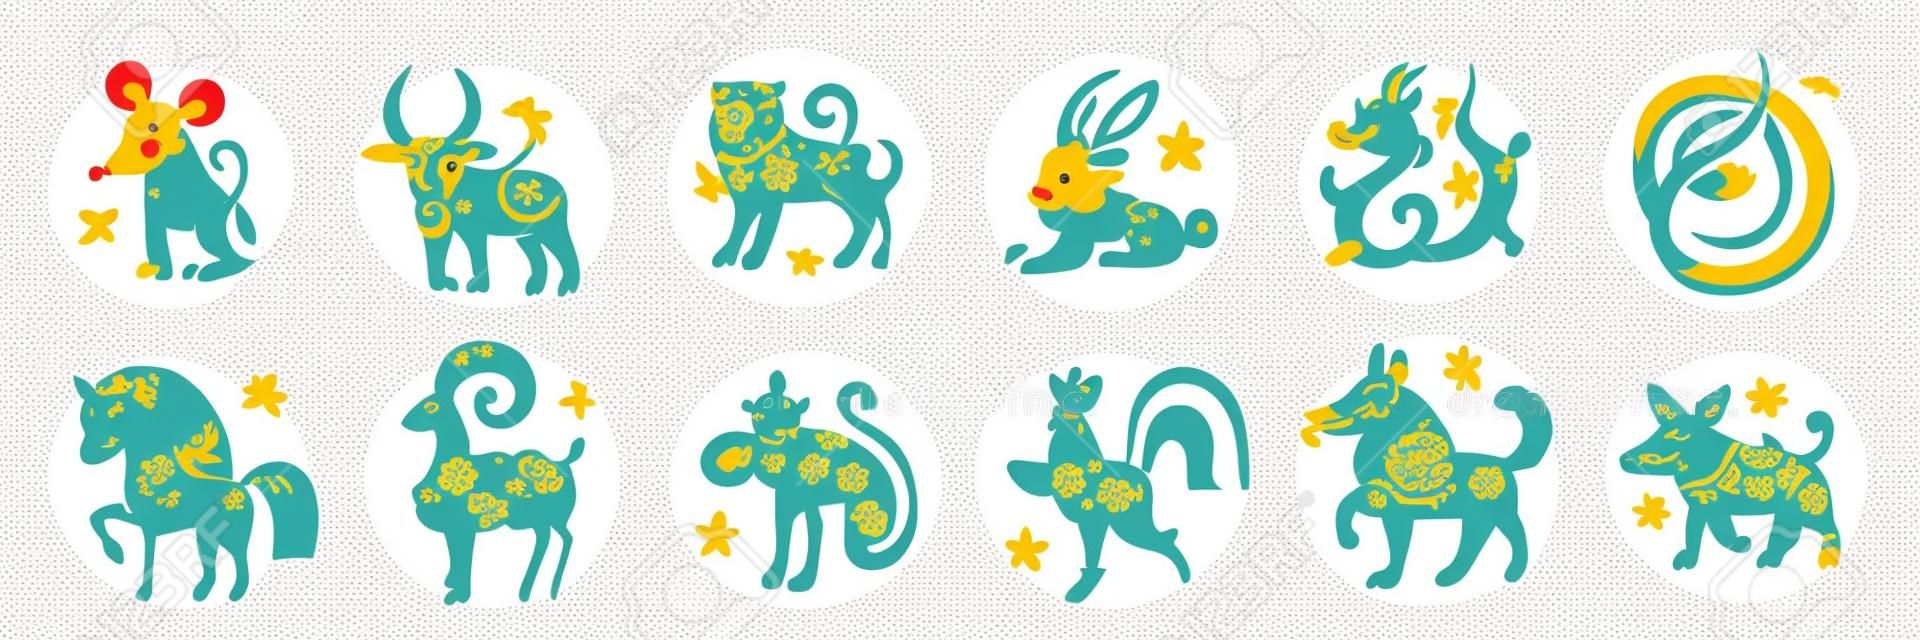 Schattige Chinese horoscoop dierenriem set. Verzameling van dieren symbolen van het jaar. China Nieuwjaar mascottes geïsoleerd op witte achtergrond. Vector illustratie van kalender astrologische tekens op cirkel stempels